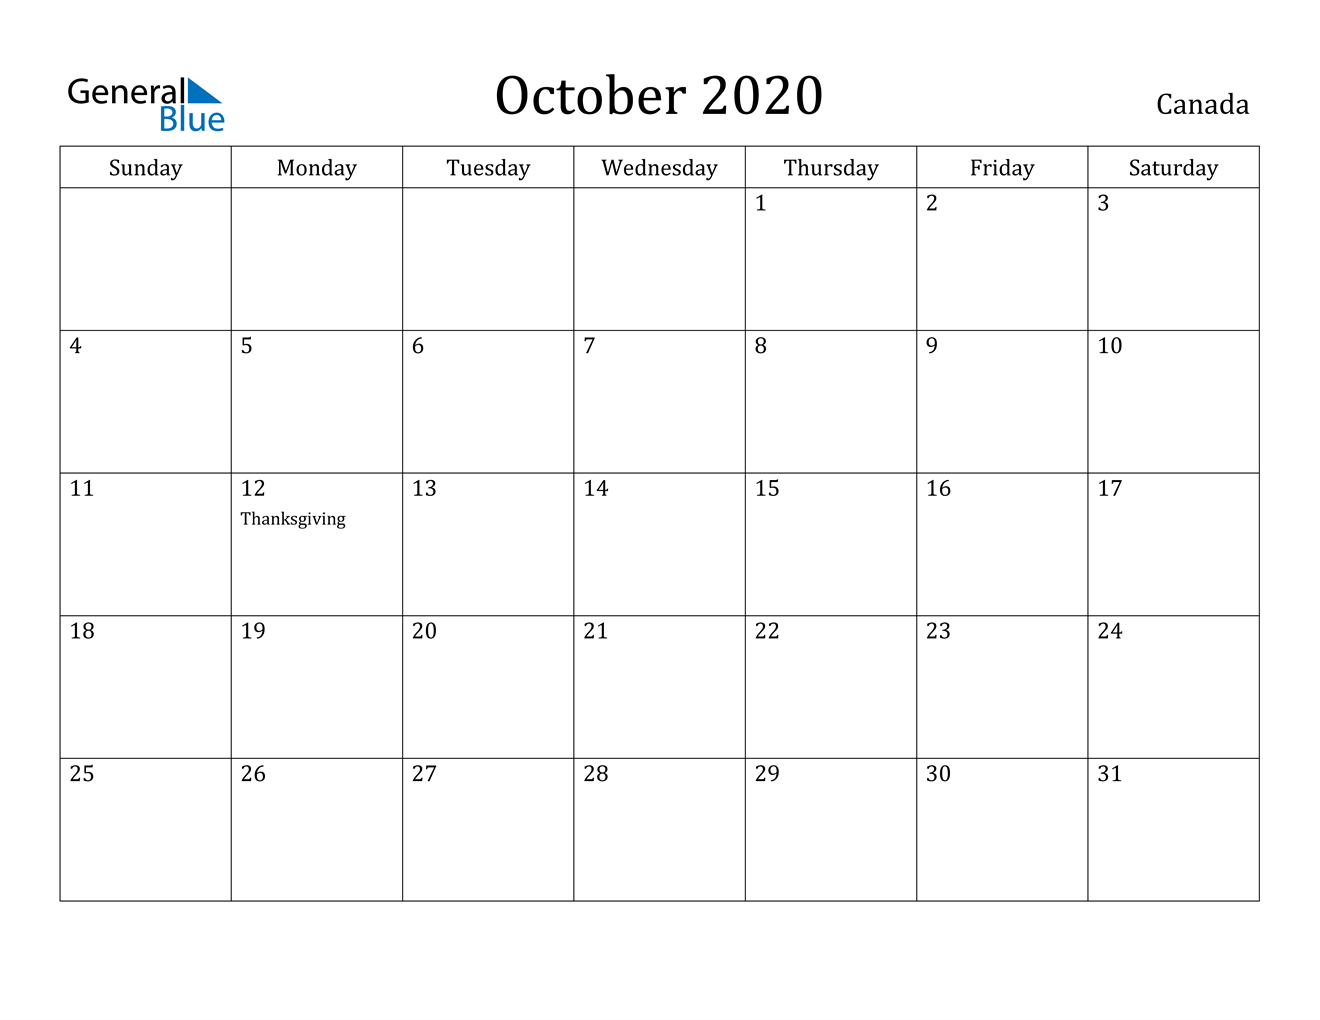 October 2020 Calendar - Canada